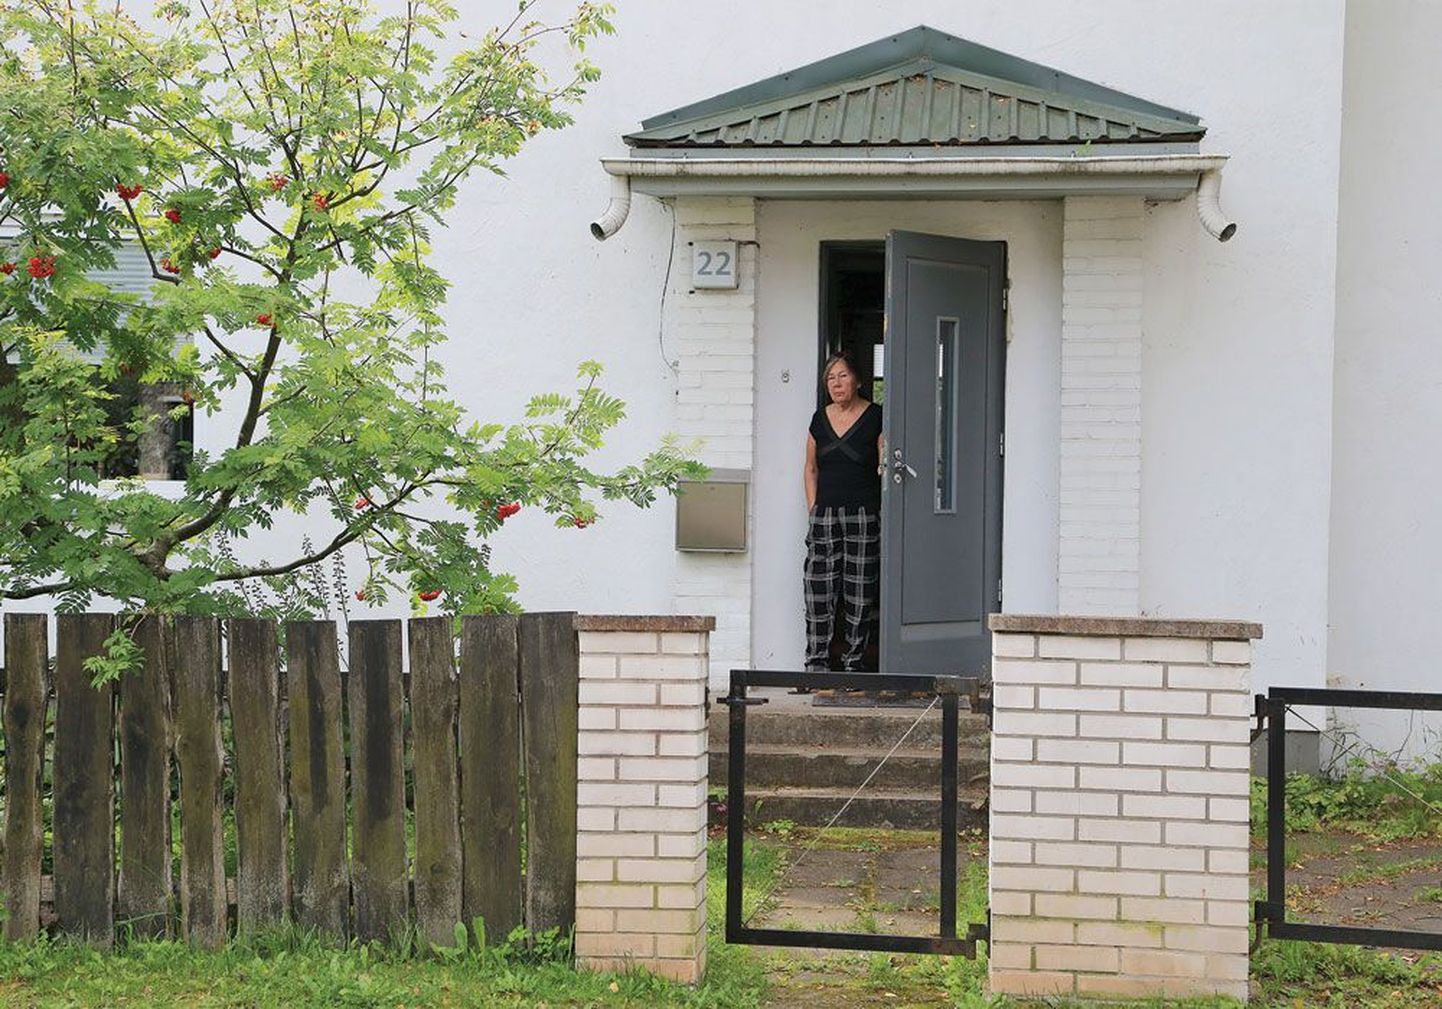 Жительница Тарту Криста Рооси возмущена тем, что поч­тальоны Omniva не соглашаются пройти четыре метра за ворота и опус­тить почту в ящик возле двери ее дома.